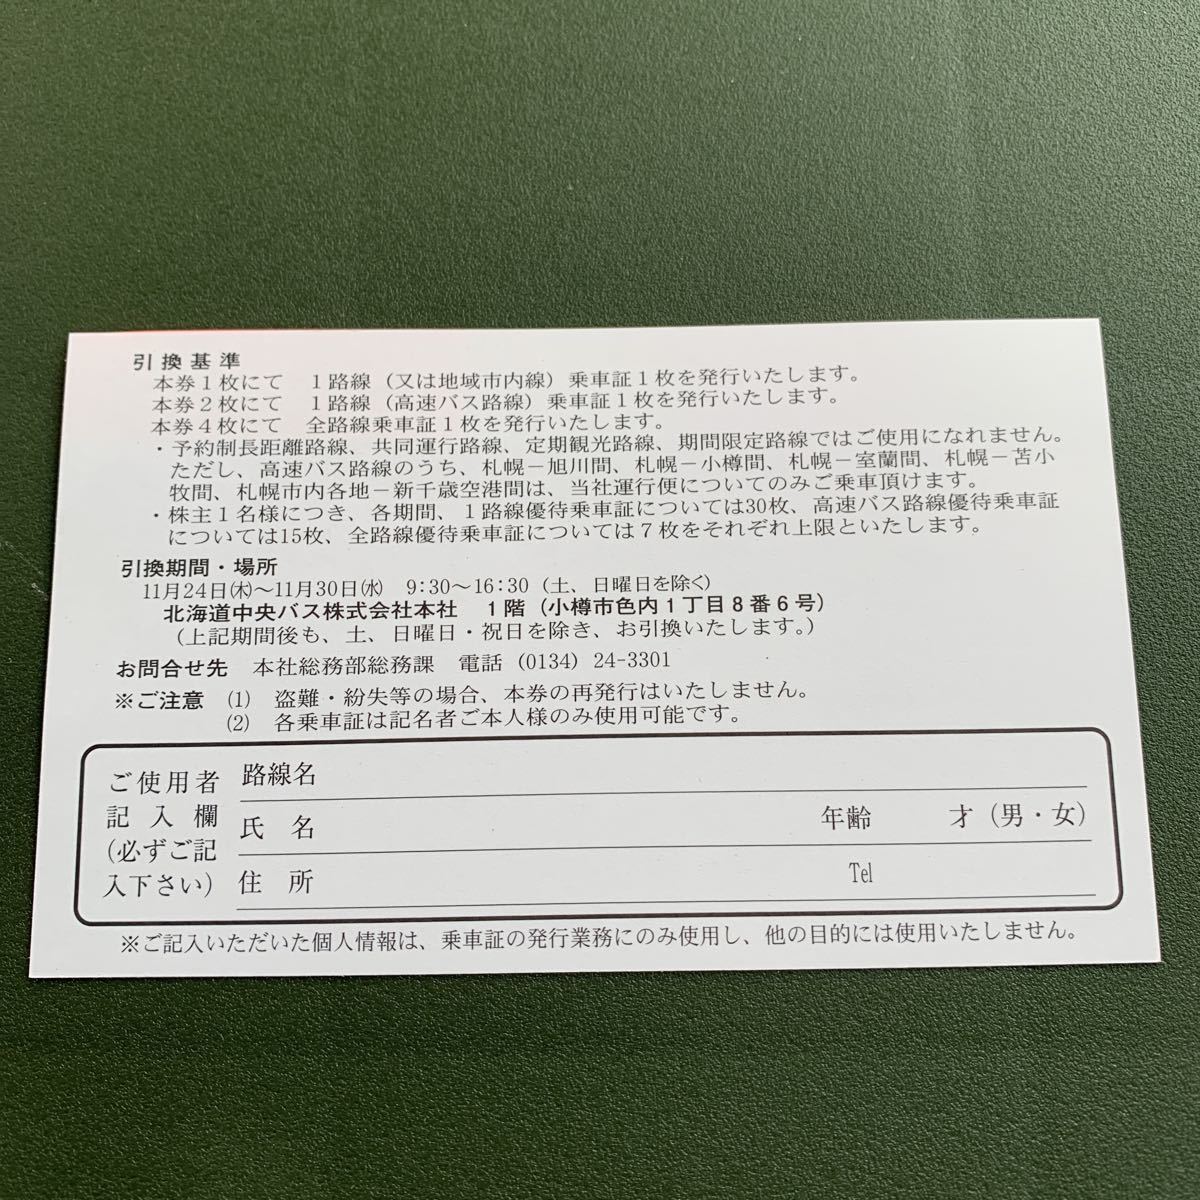 中華のおせち贈り物 北海道中央バス 株主ご優待乗車券引換券 ienomat